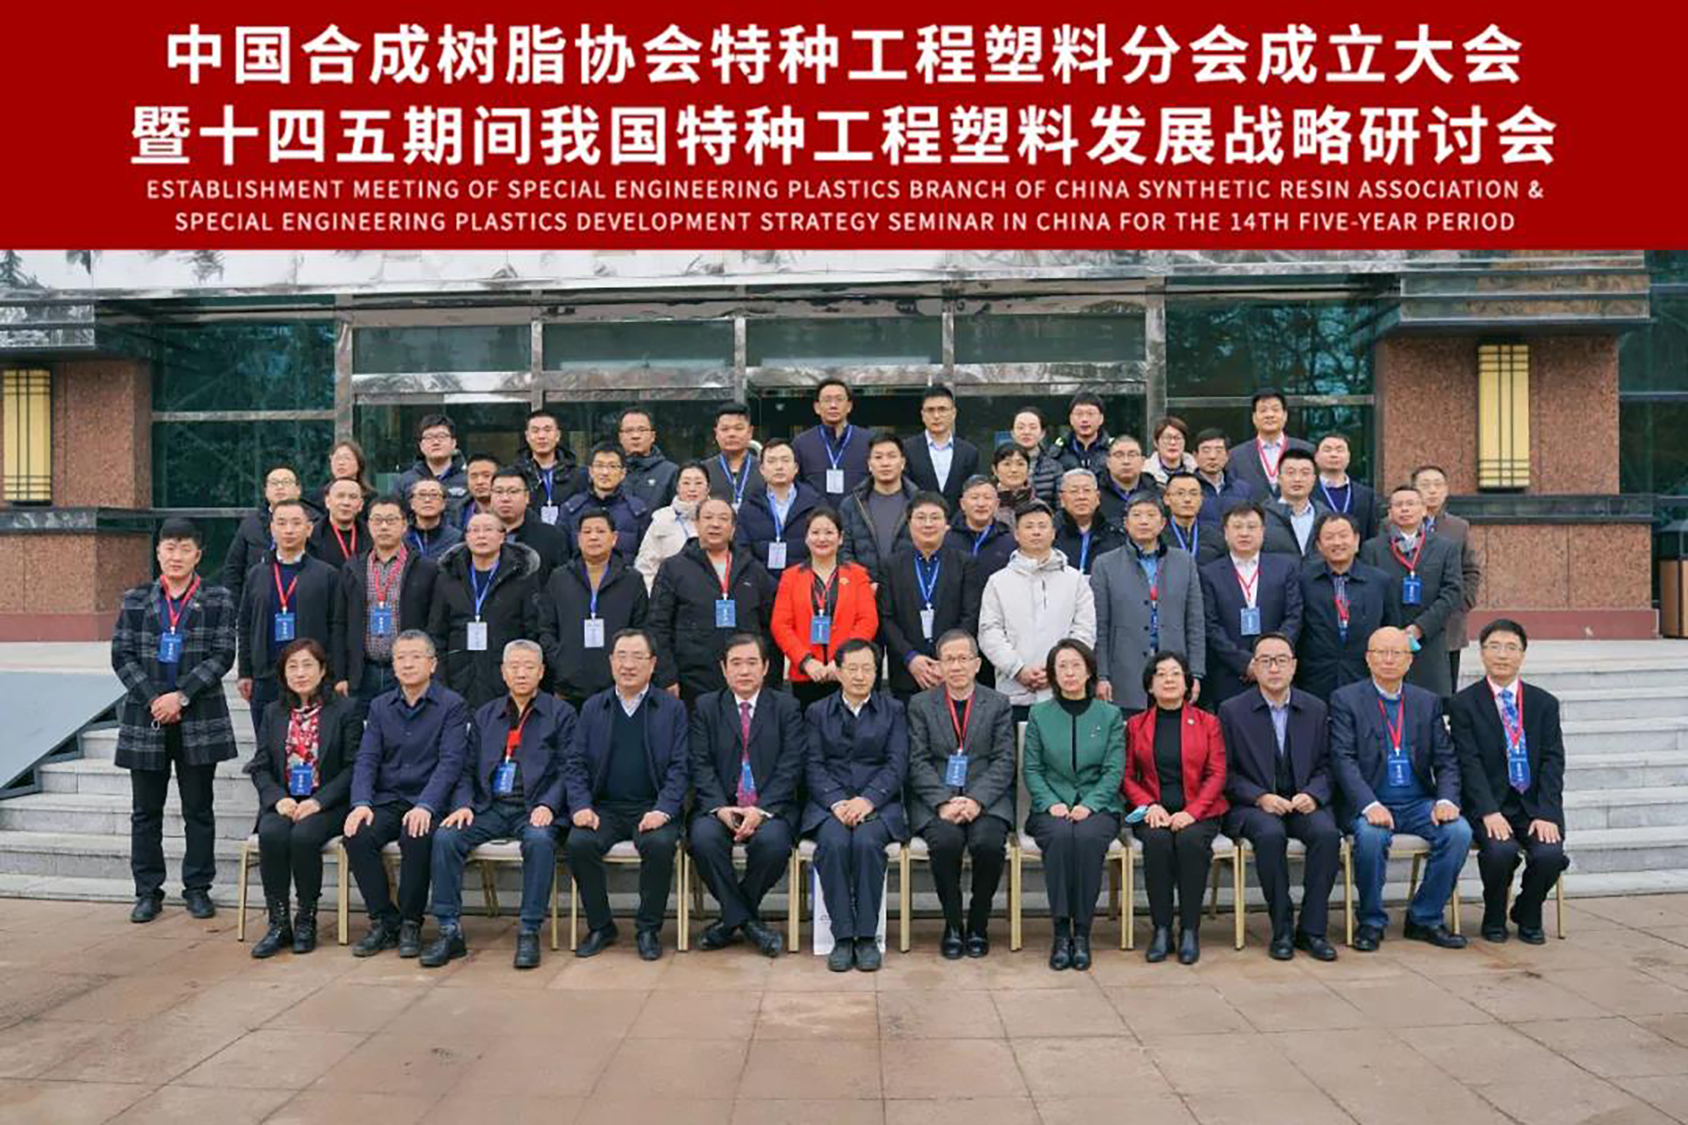 熱烈慶祝中國合成樹脂協會特種工程塑料分會成立大會成功召開 